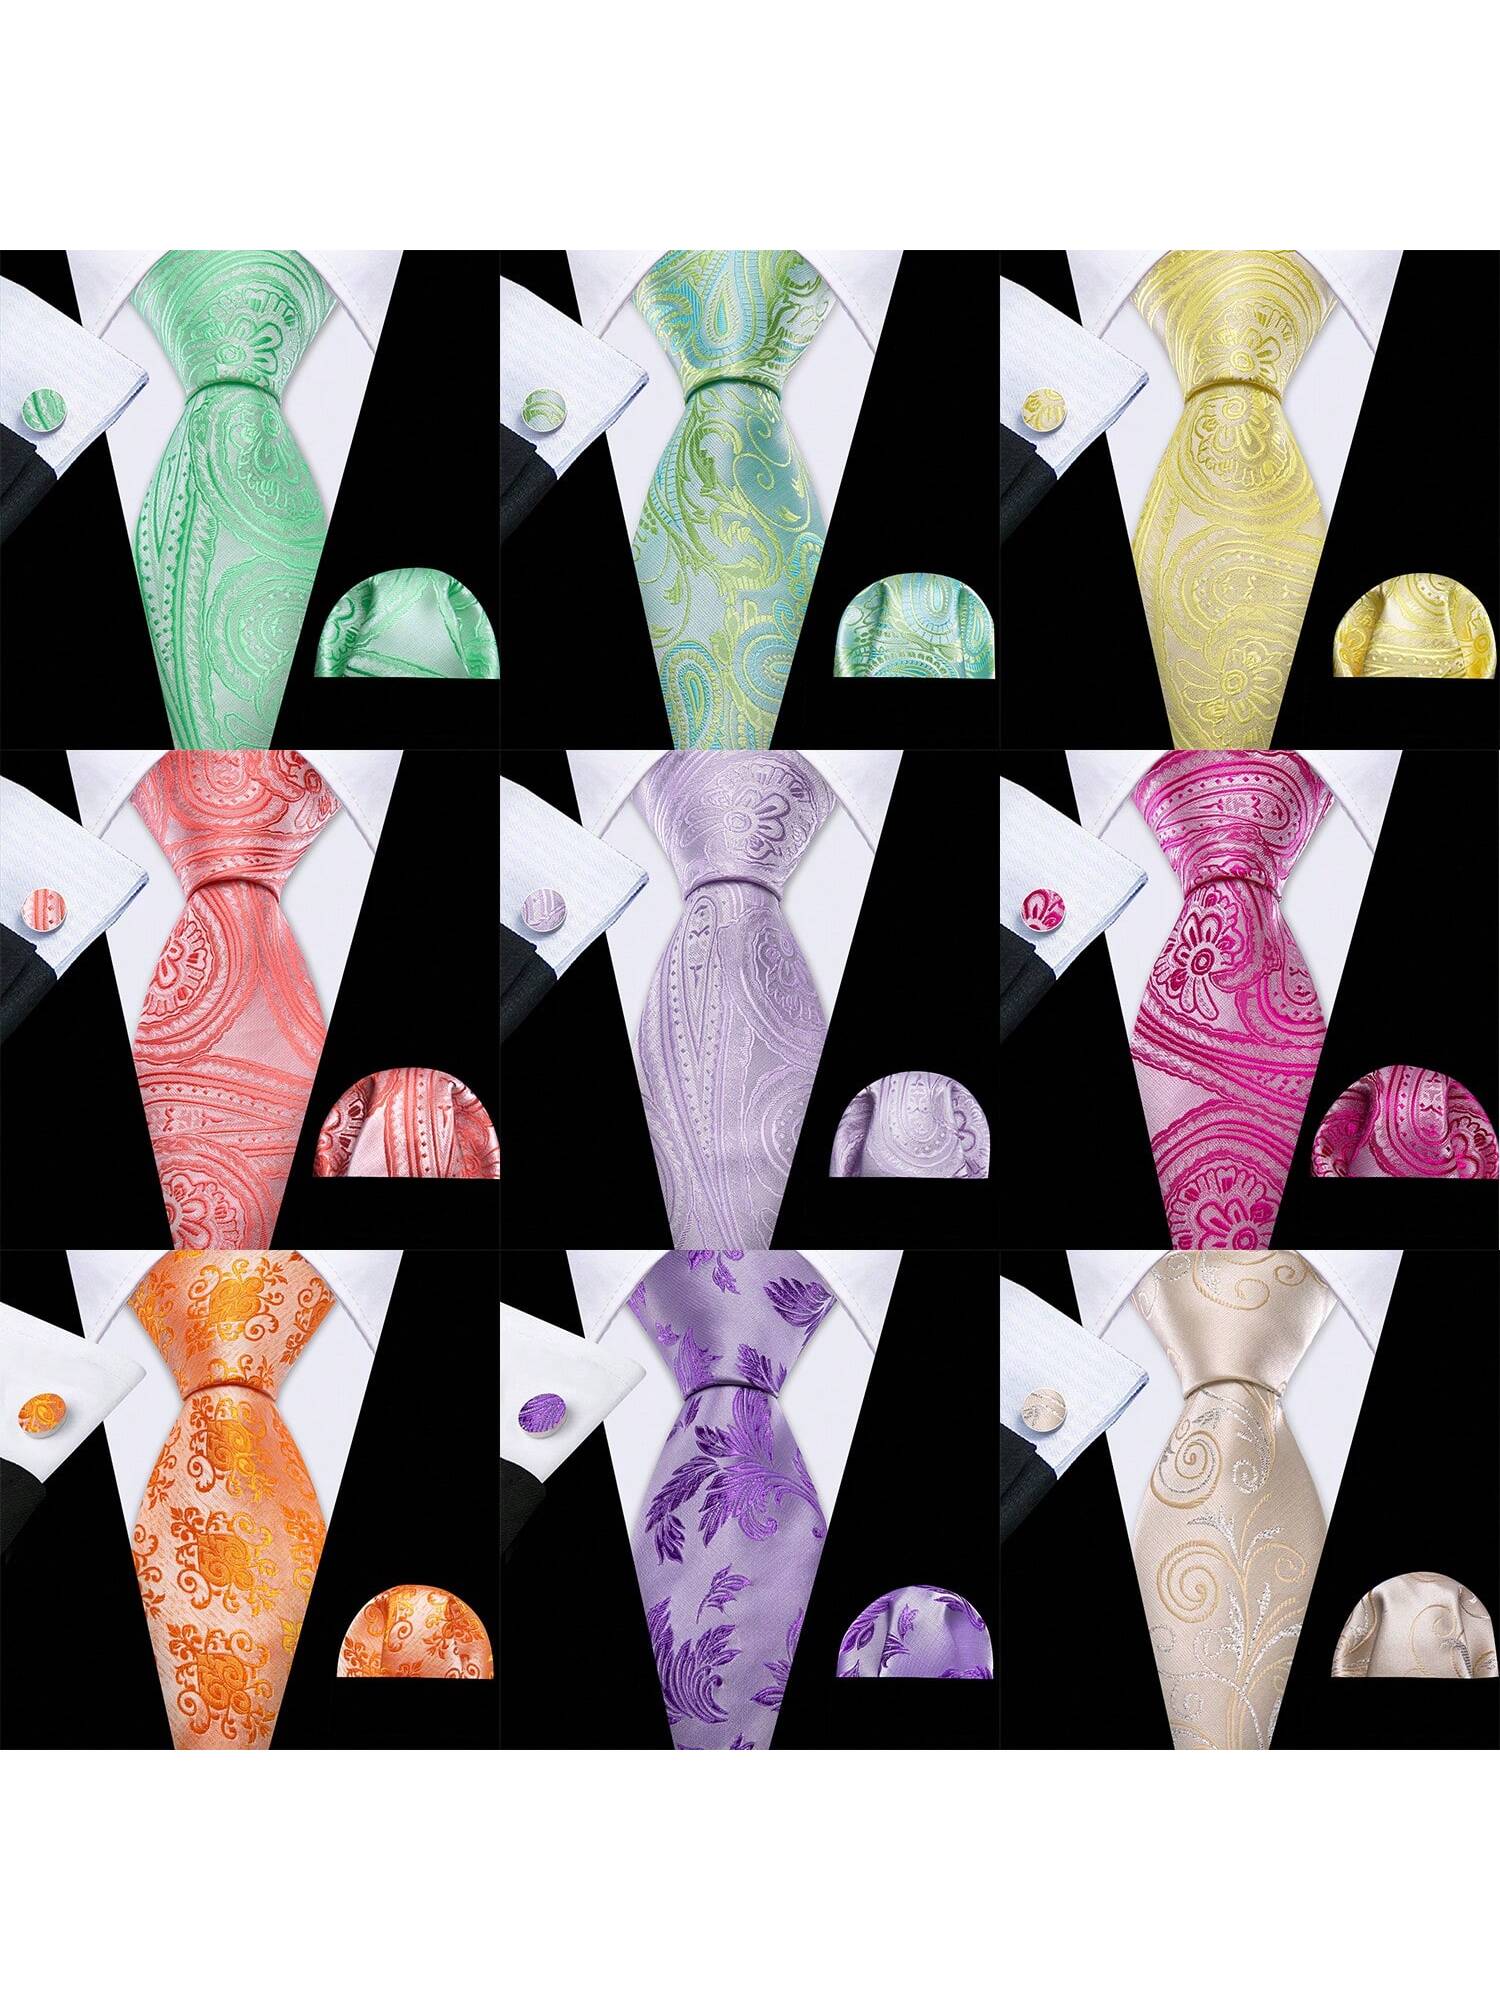 высококлассный мужской галстук matagorda 15 стилей шелковый галстук пейсли гусиные лапки галстук для мужчин формальный для свадьбы деловог Мужской шелковый галстук Barry Wang, многоцветный